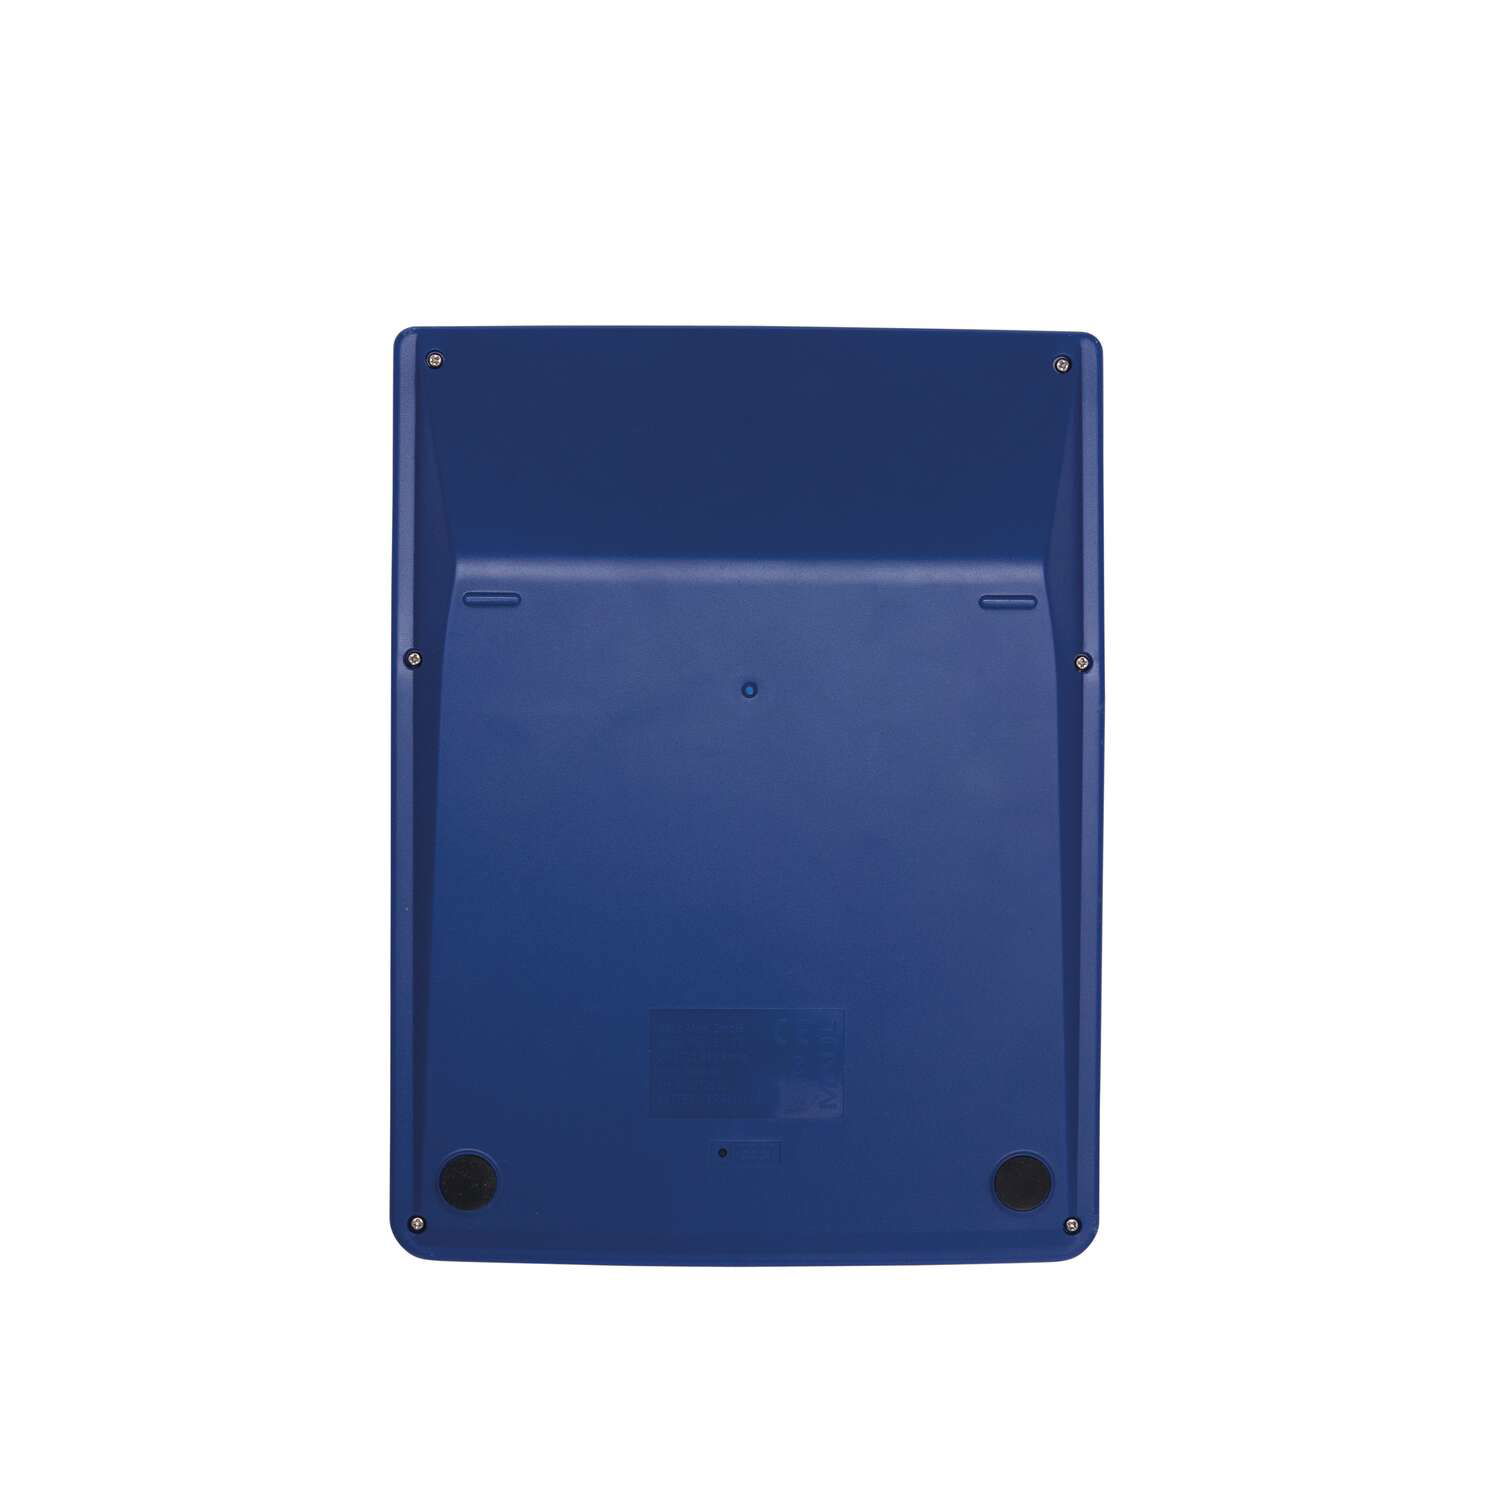 MAUL Tischrechner MXL 12 Solar Batterie 1-zeilig, 12 Ziffern hellblau